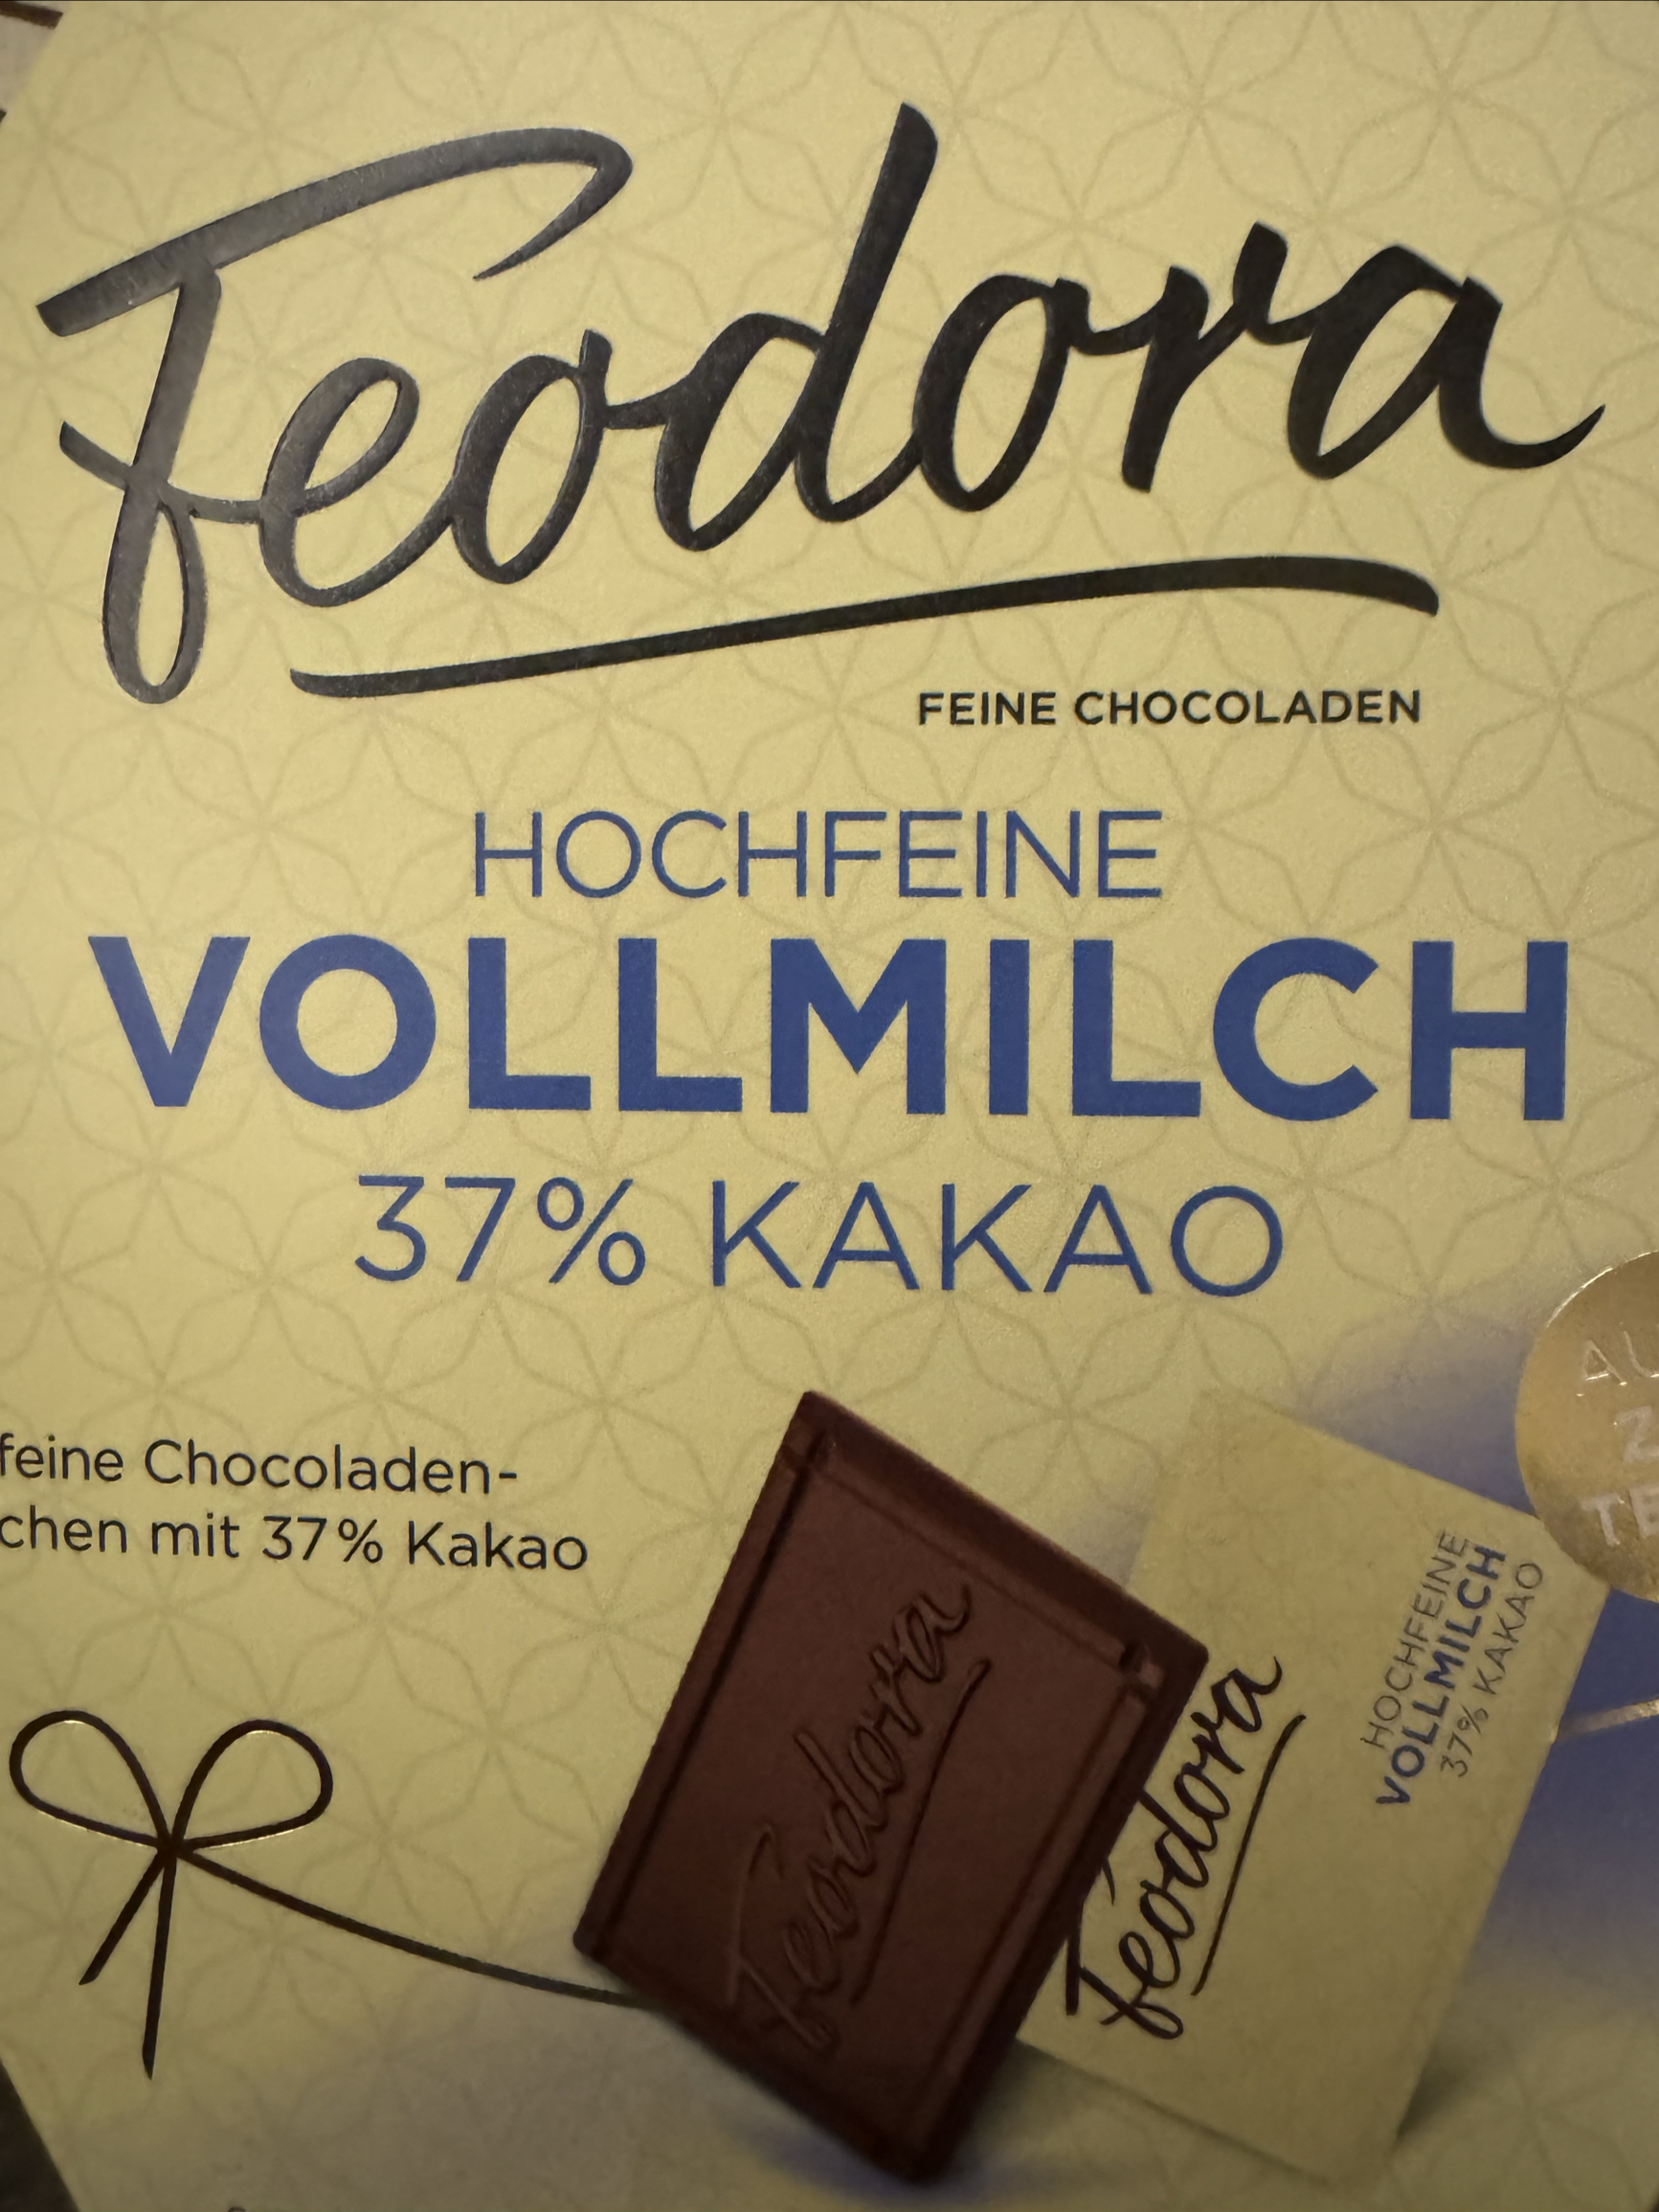 赌神巧克力就是Feodora公爵夫人，闻起来有浓郁的可可醇香，吃到嘴里有微苦，还有淡淡的烟草味，该巧